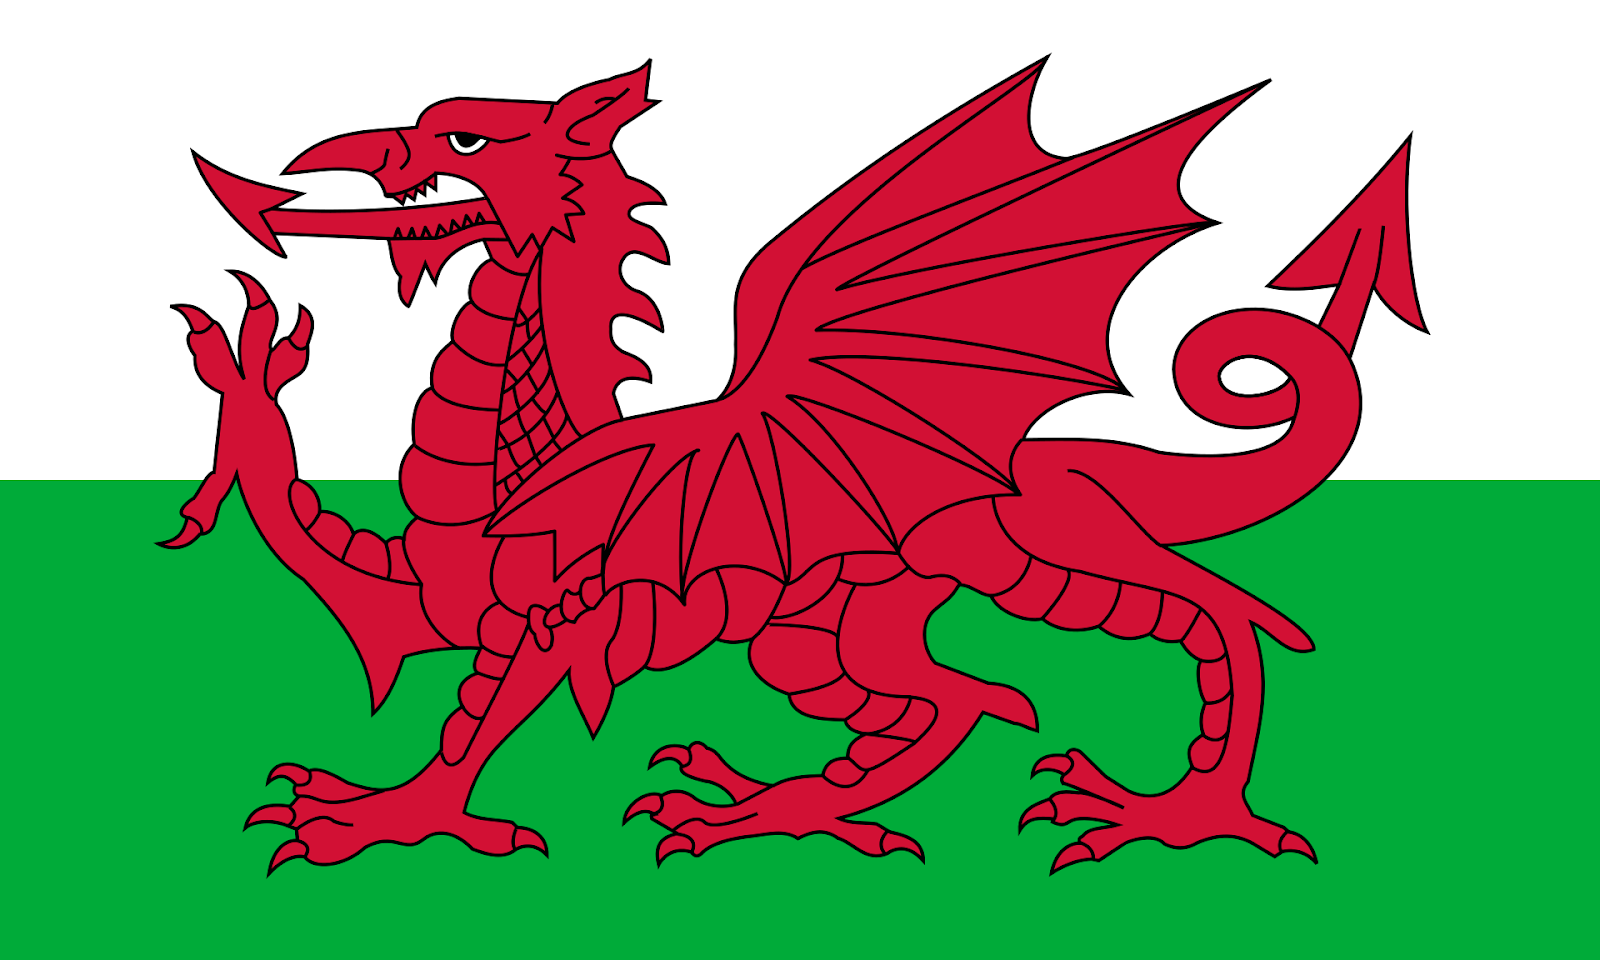 Văn hóa Anh Quốc: Wales - Năm 2024, văn hóa Wales đang ngày càng thu hút khách du lịch với sự đa dạng và sâu sắc. Từ những lễ hội âm nhạc đến các sự kiện văn hóa truyền thống, Wales là điểm đến tuyệt vời cho những ai muốn trải nghiệm sự phong phú của văn hóa Anh Quốc. Hãy xem những hình ảnh đẹp tuyệt vời liên quan đến văn hóa Wales để khám phá sự phong phú và đa dạng của đất nước này.